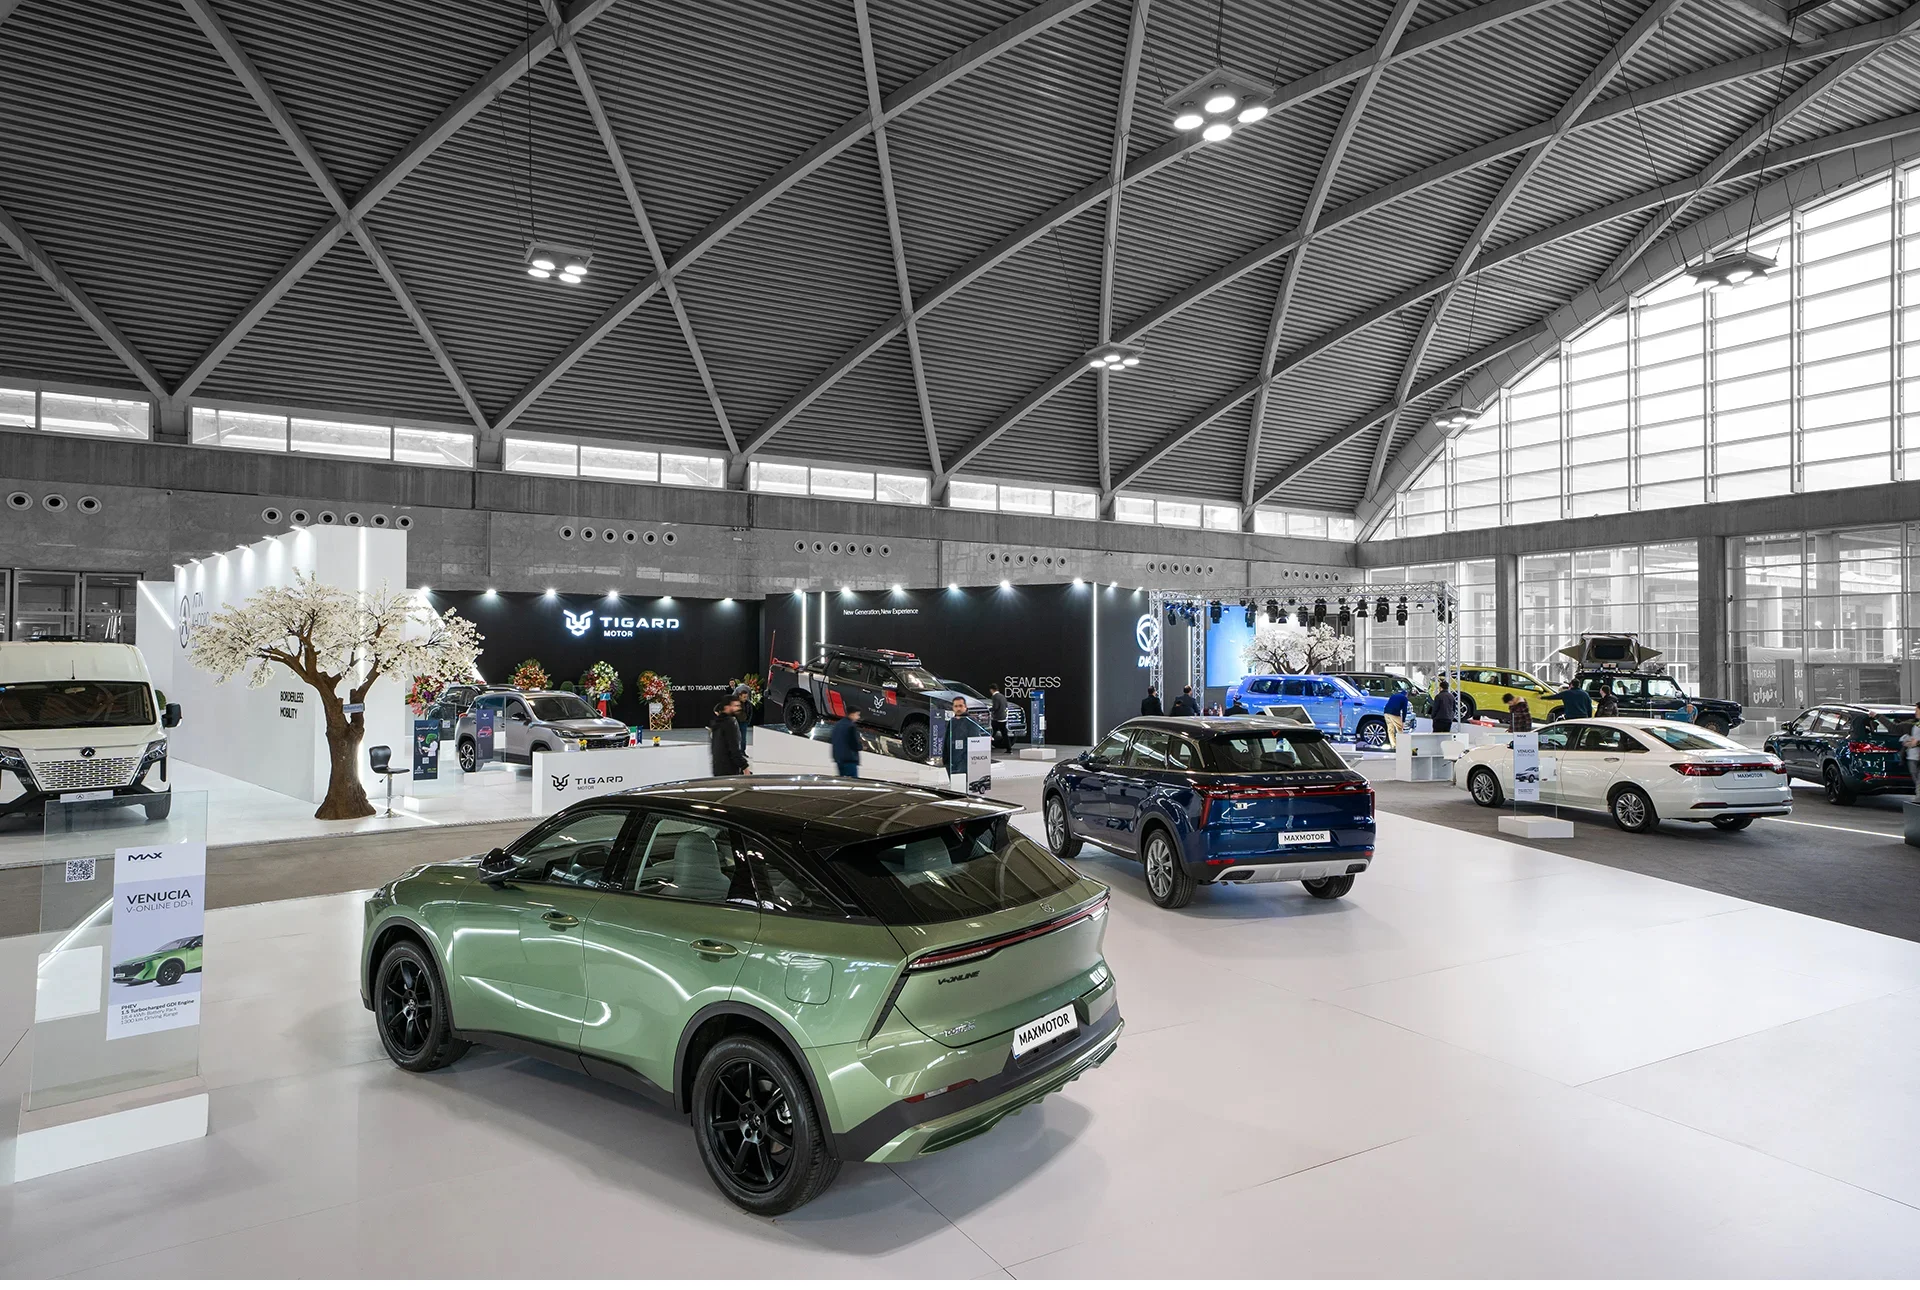   18 طراحی غرفه و غرفه سازی نمایشگاهی هولدینگ ماموت نمایشگاه خودرو شهر آفتاب 